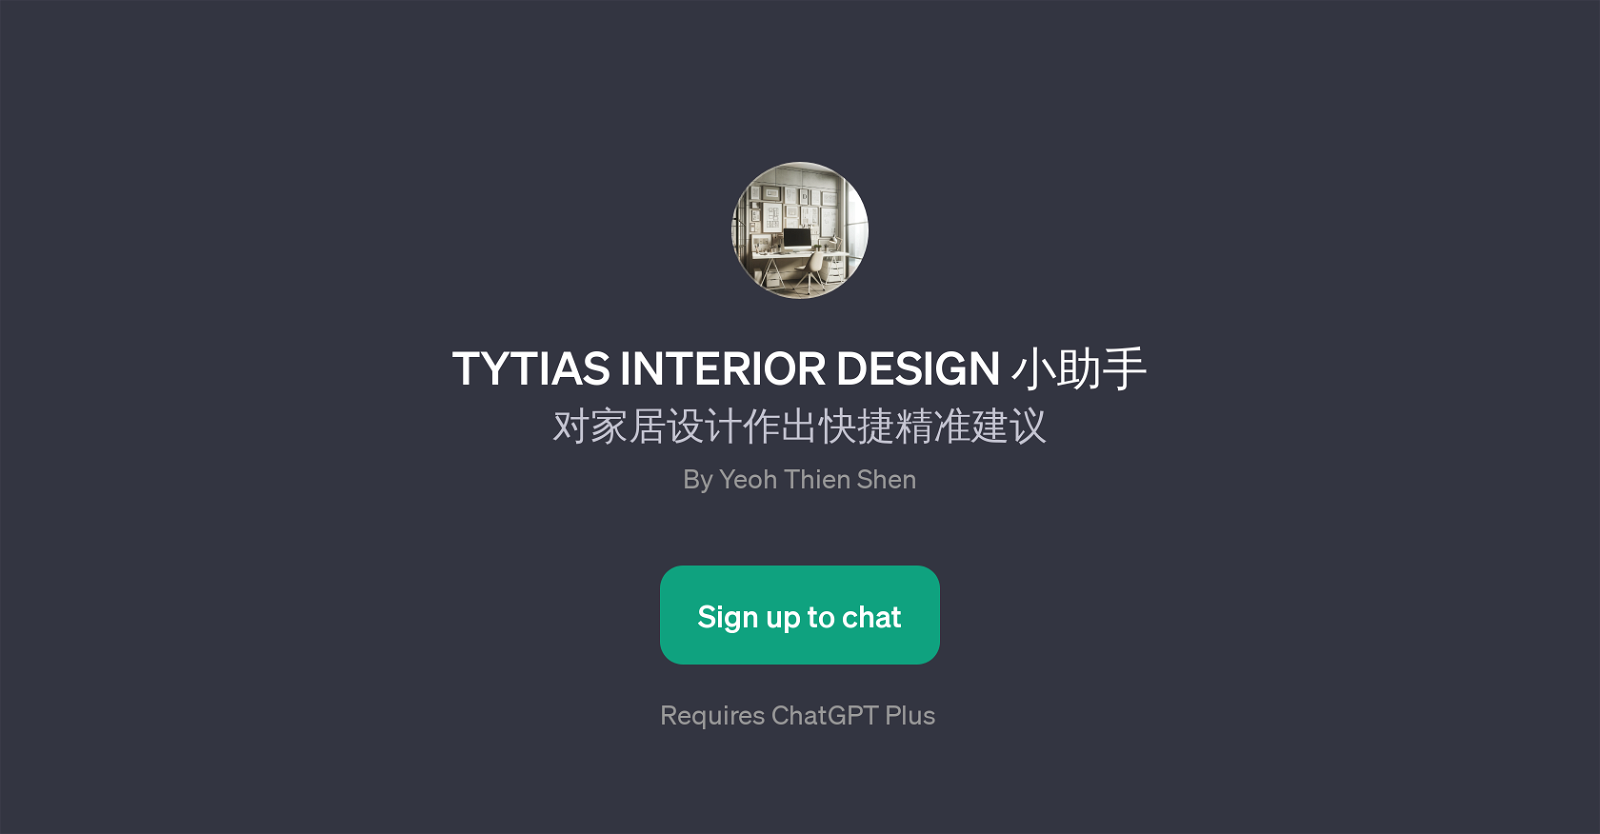 TYTIAS INTERIOR DESIGN website